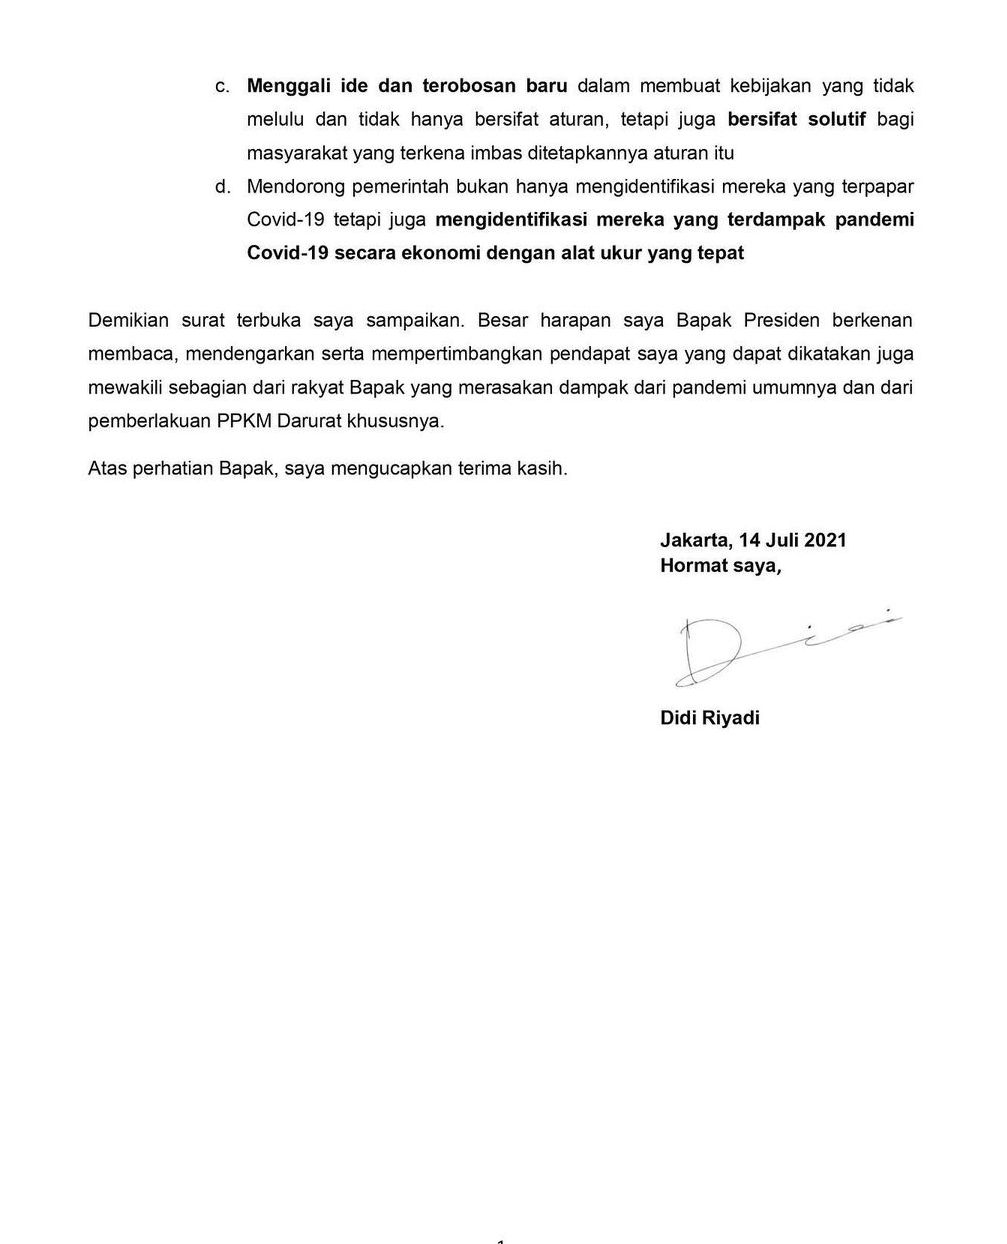 Menolak Perpanjanhan PPKM Darurat, Didi Royadi Tulis Surat Terbuka Kepada Presiden Jokowi